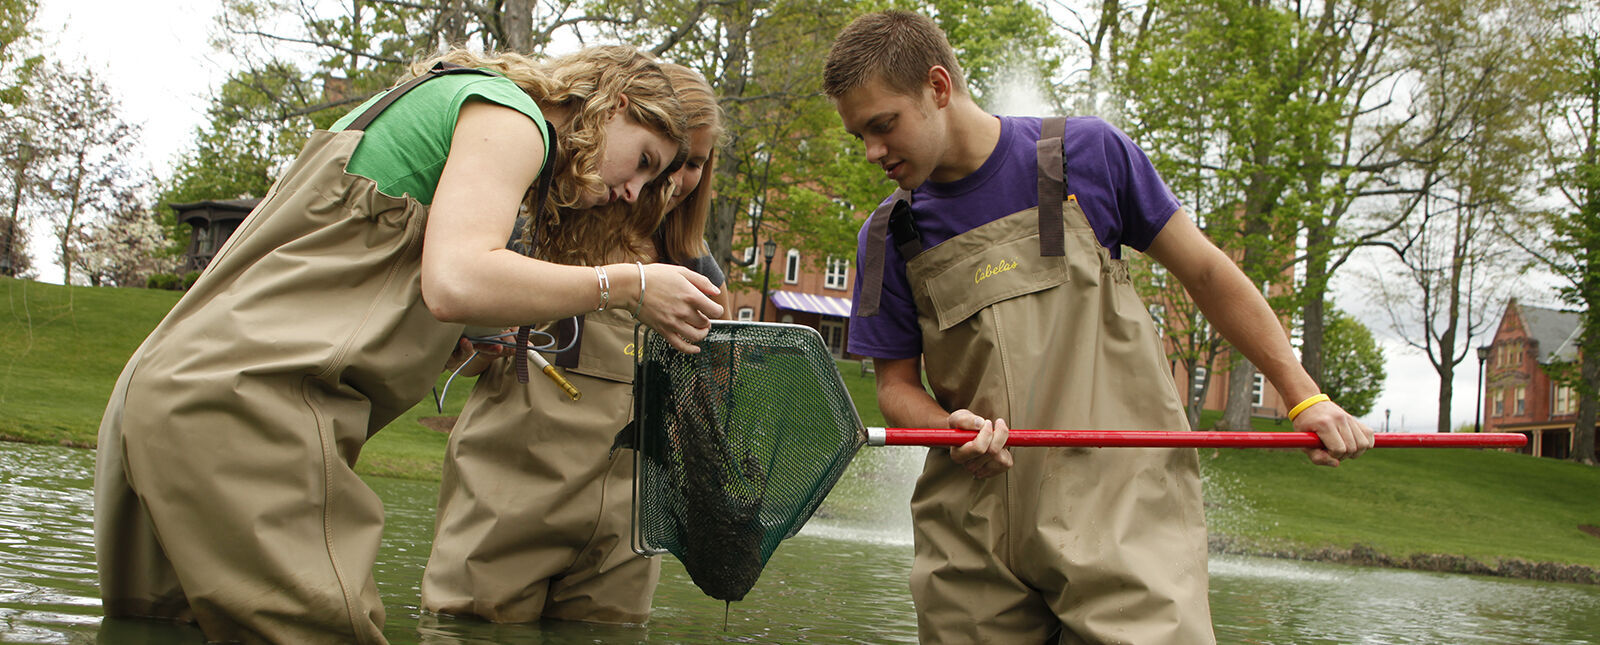 学生们用网从一个小池塘里捞出生物